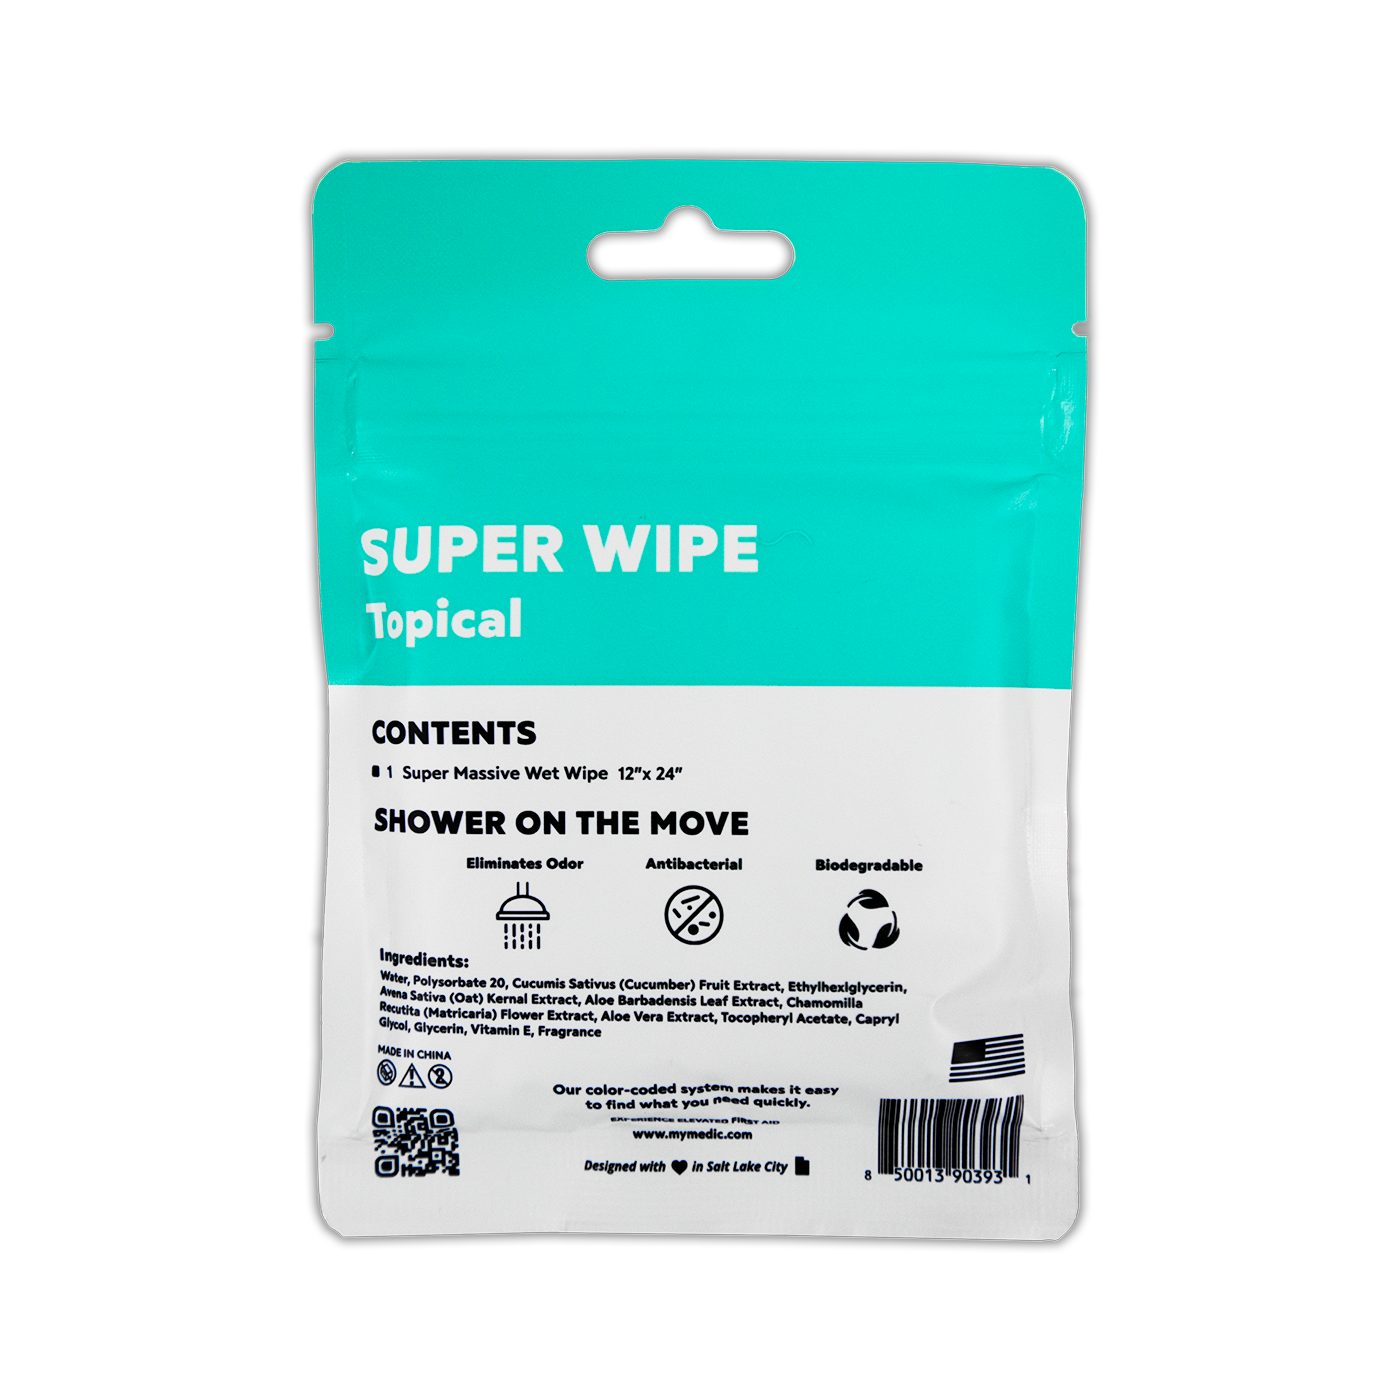 Super Wipe